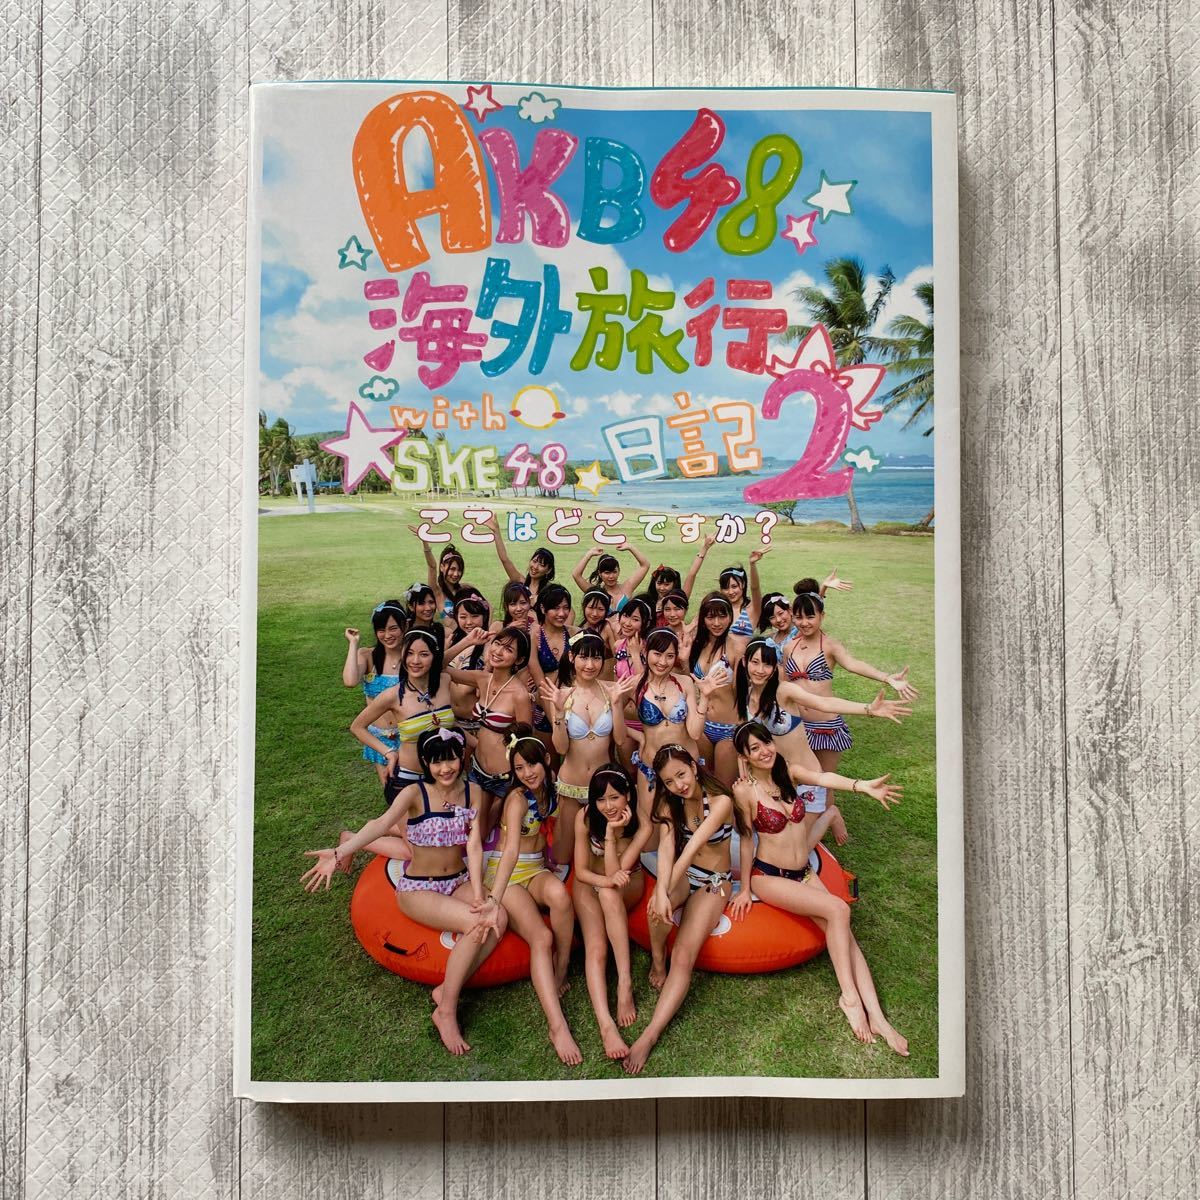 AKB48海外旅行日記 2 (ここはどこですか?)＋写真2枚付き